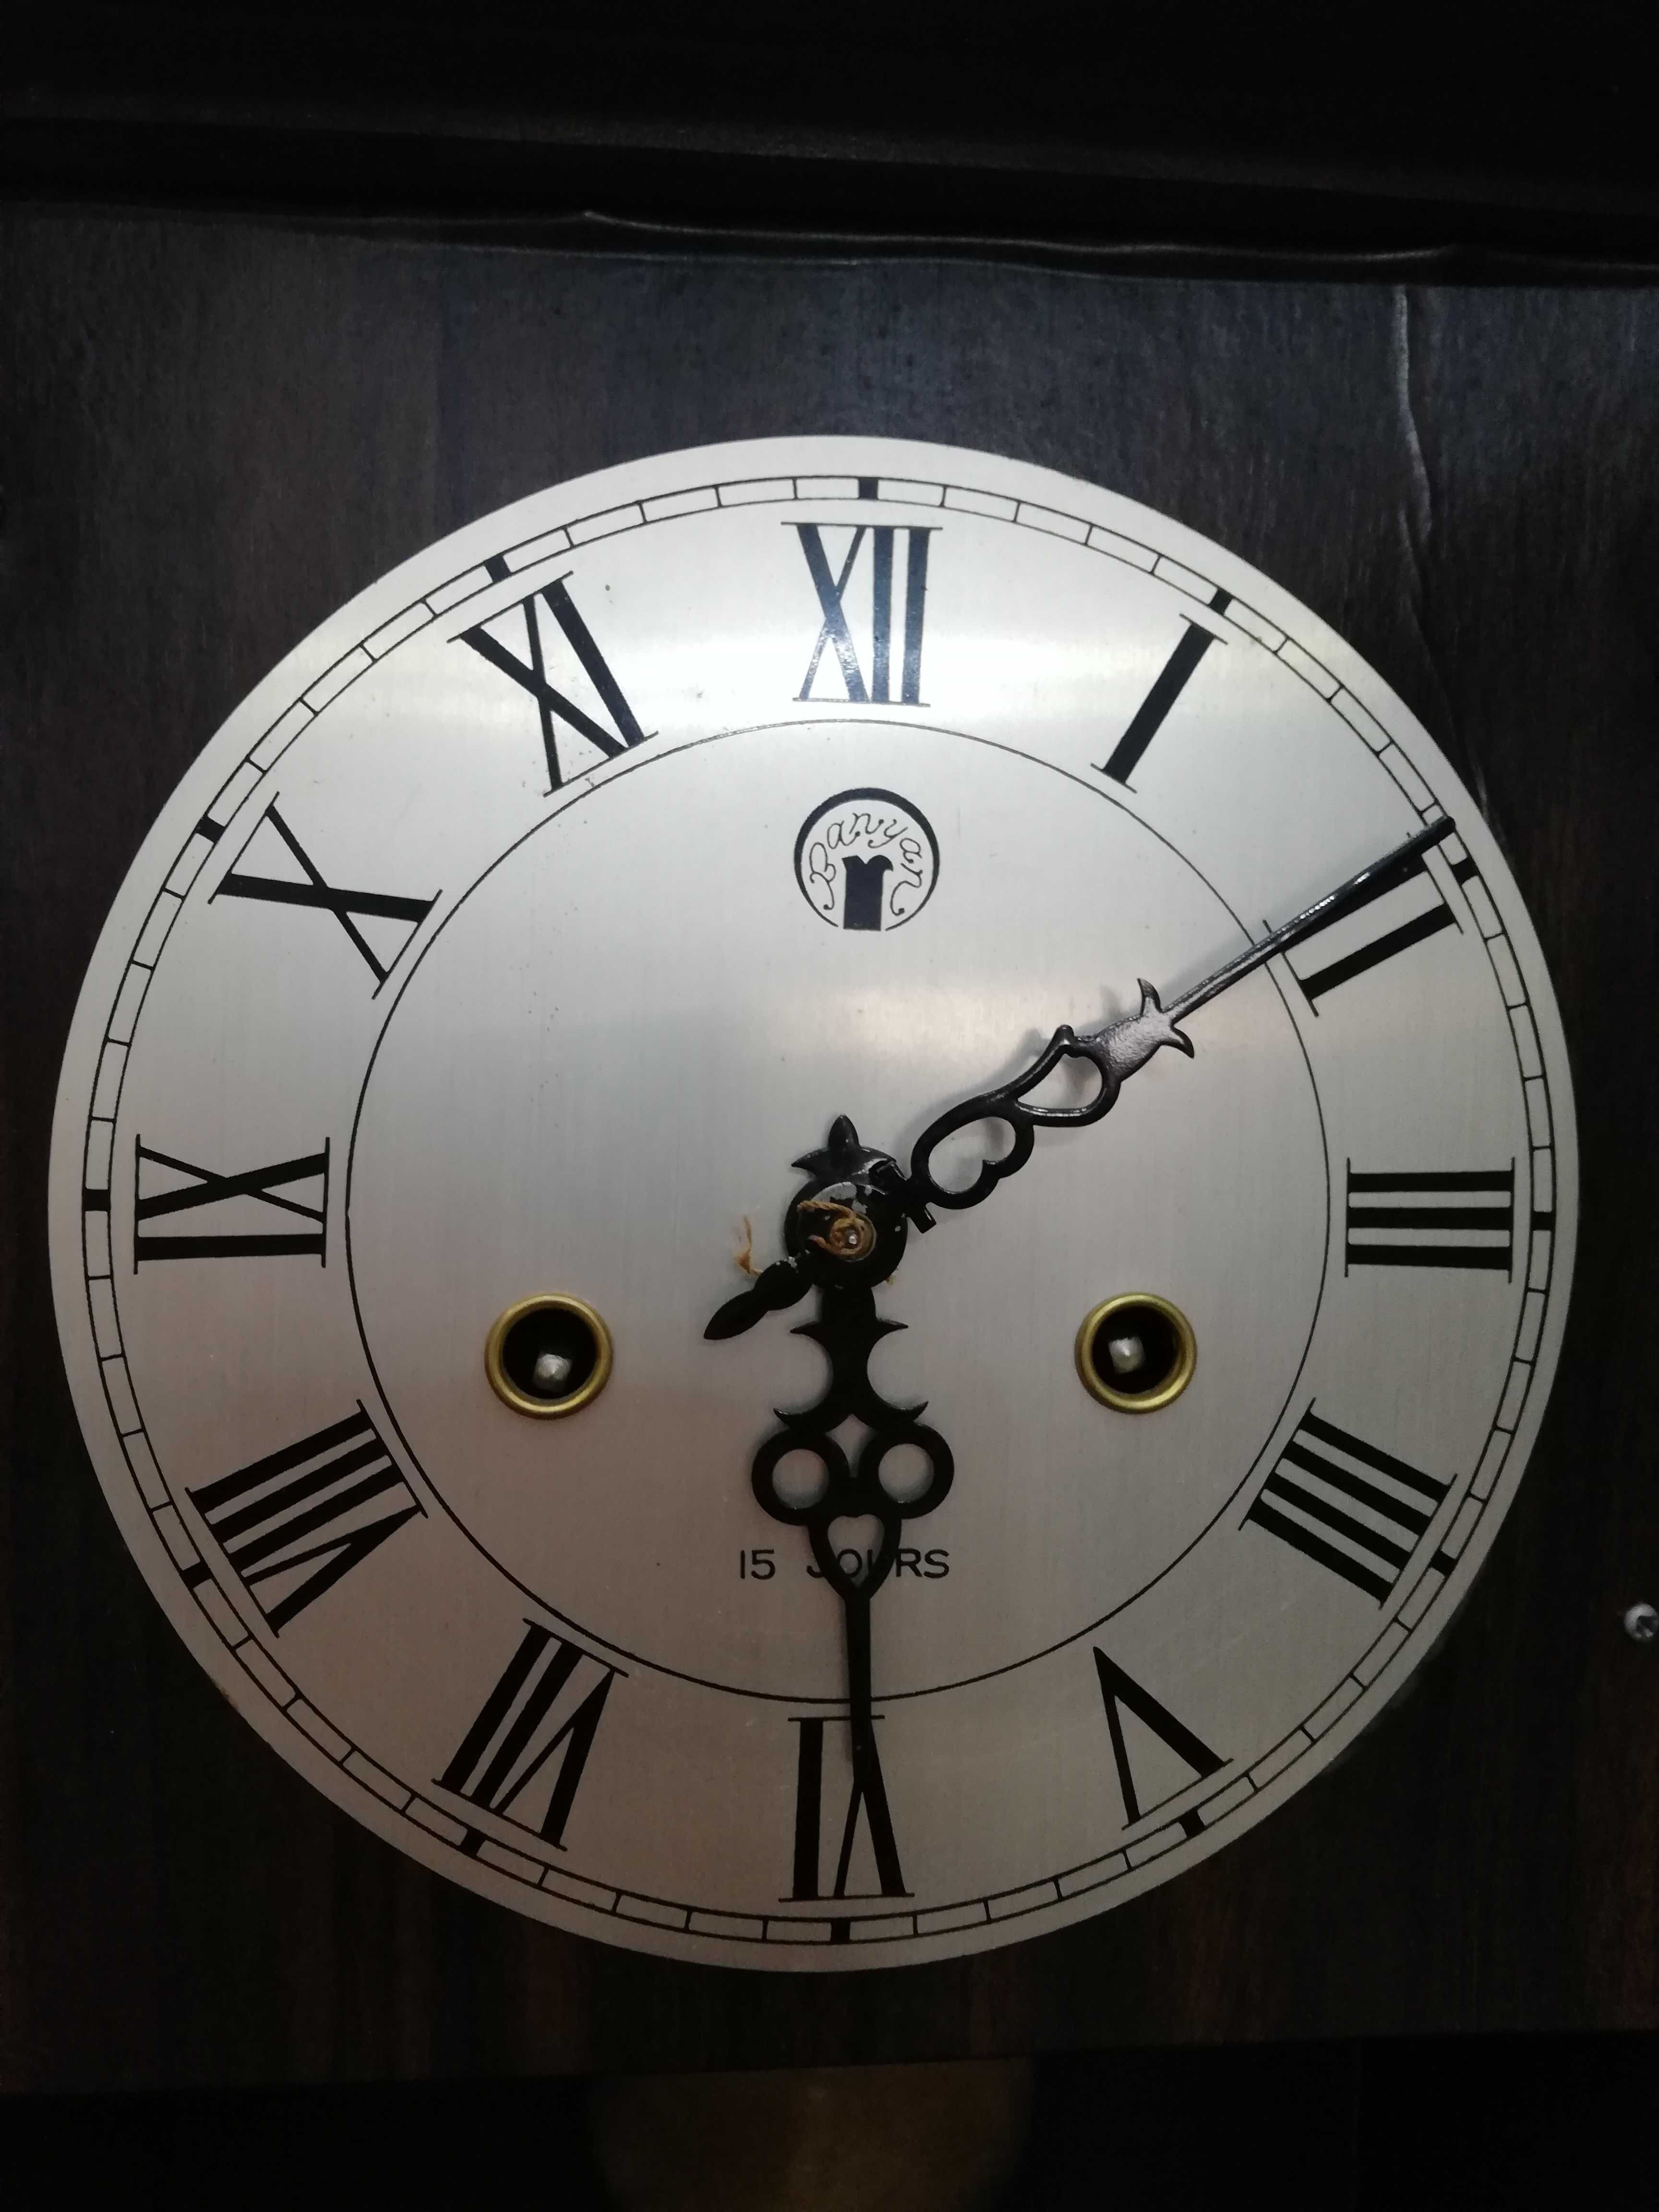 Vendo Relógio de parede vintage - 15 Jours - BAIXA DE PREÇO